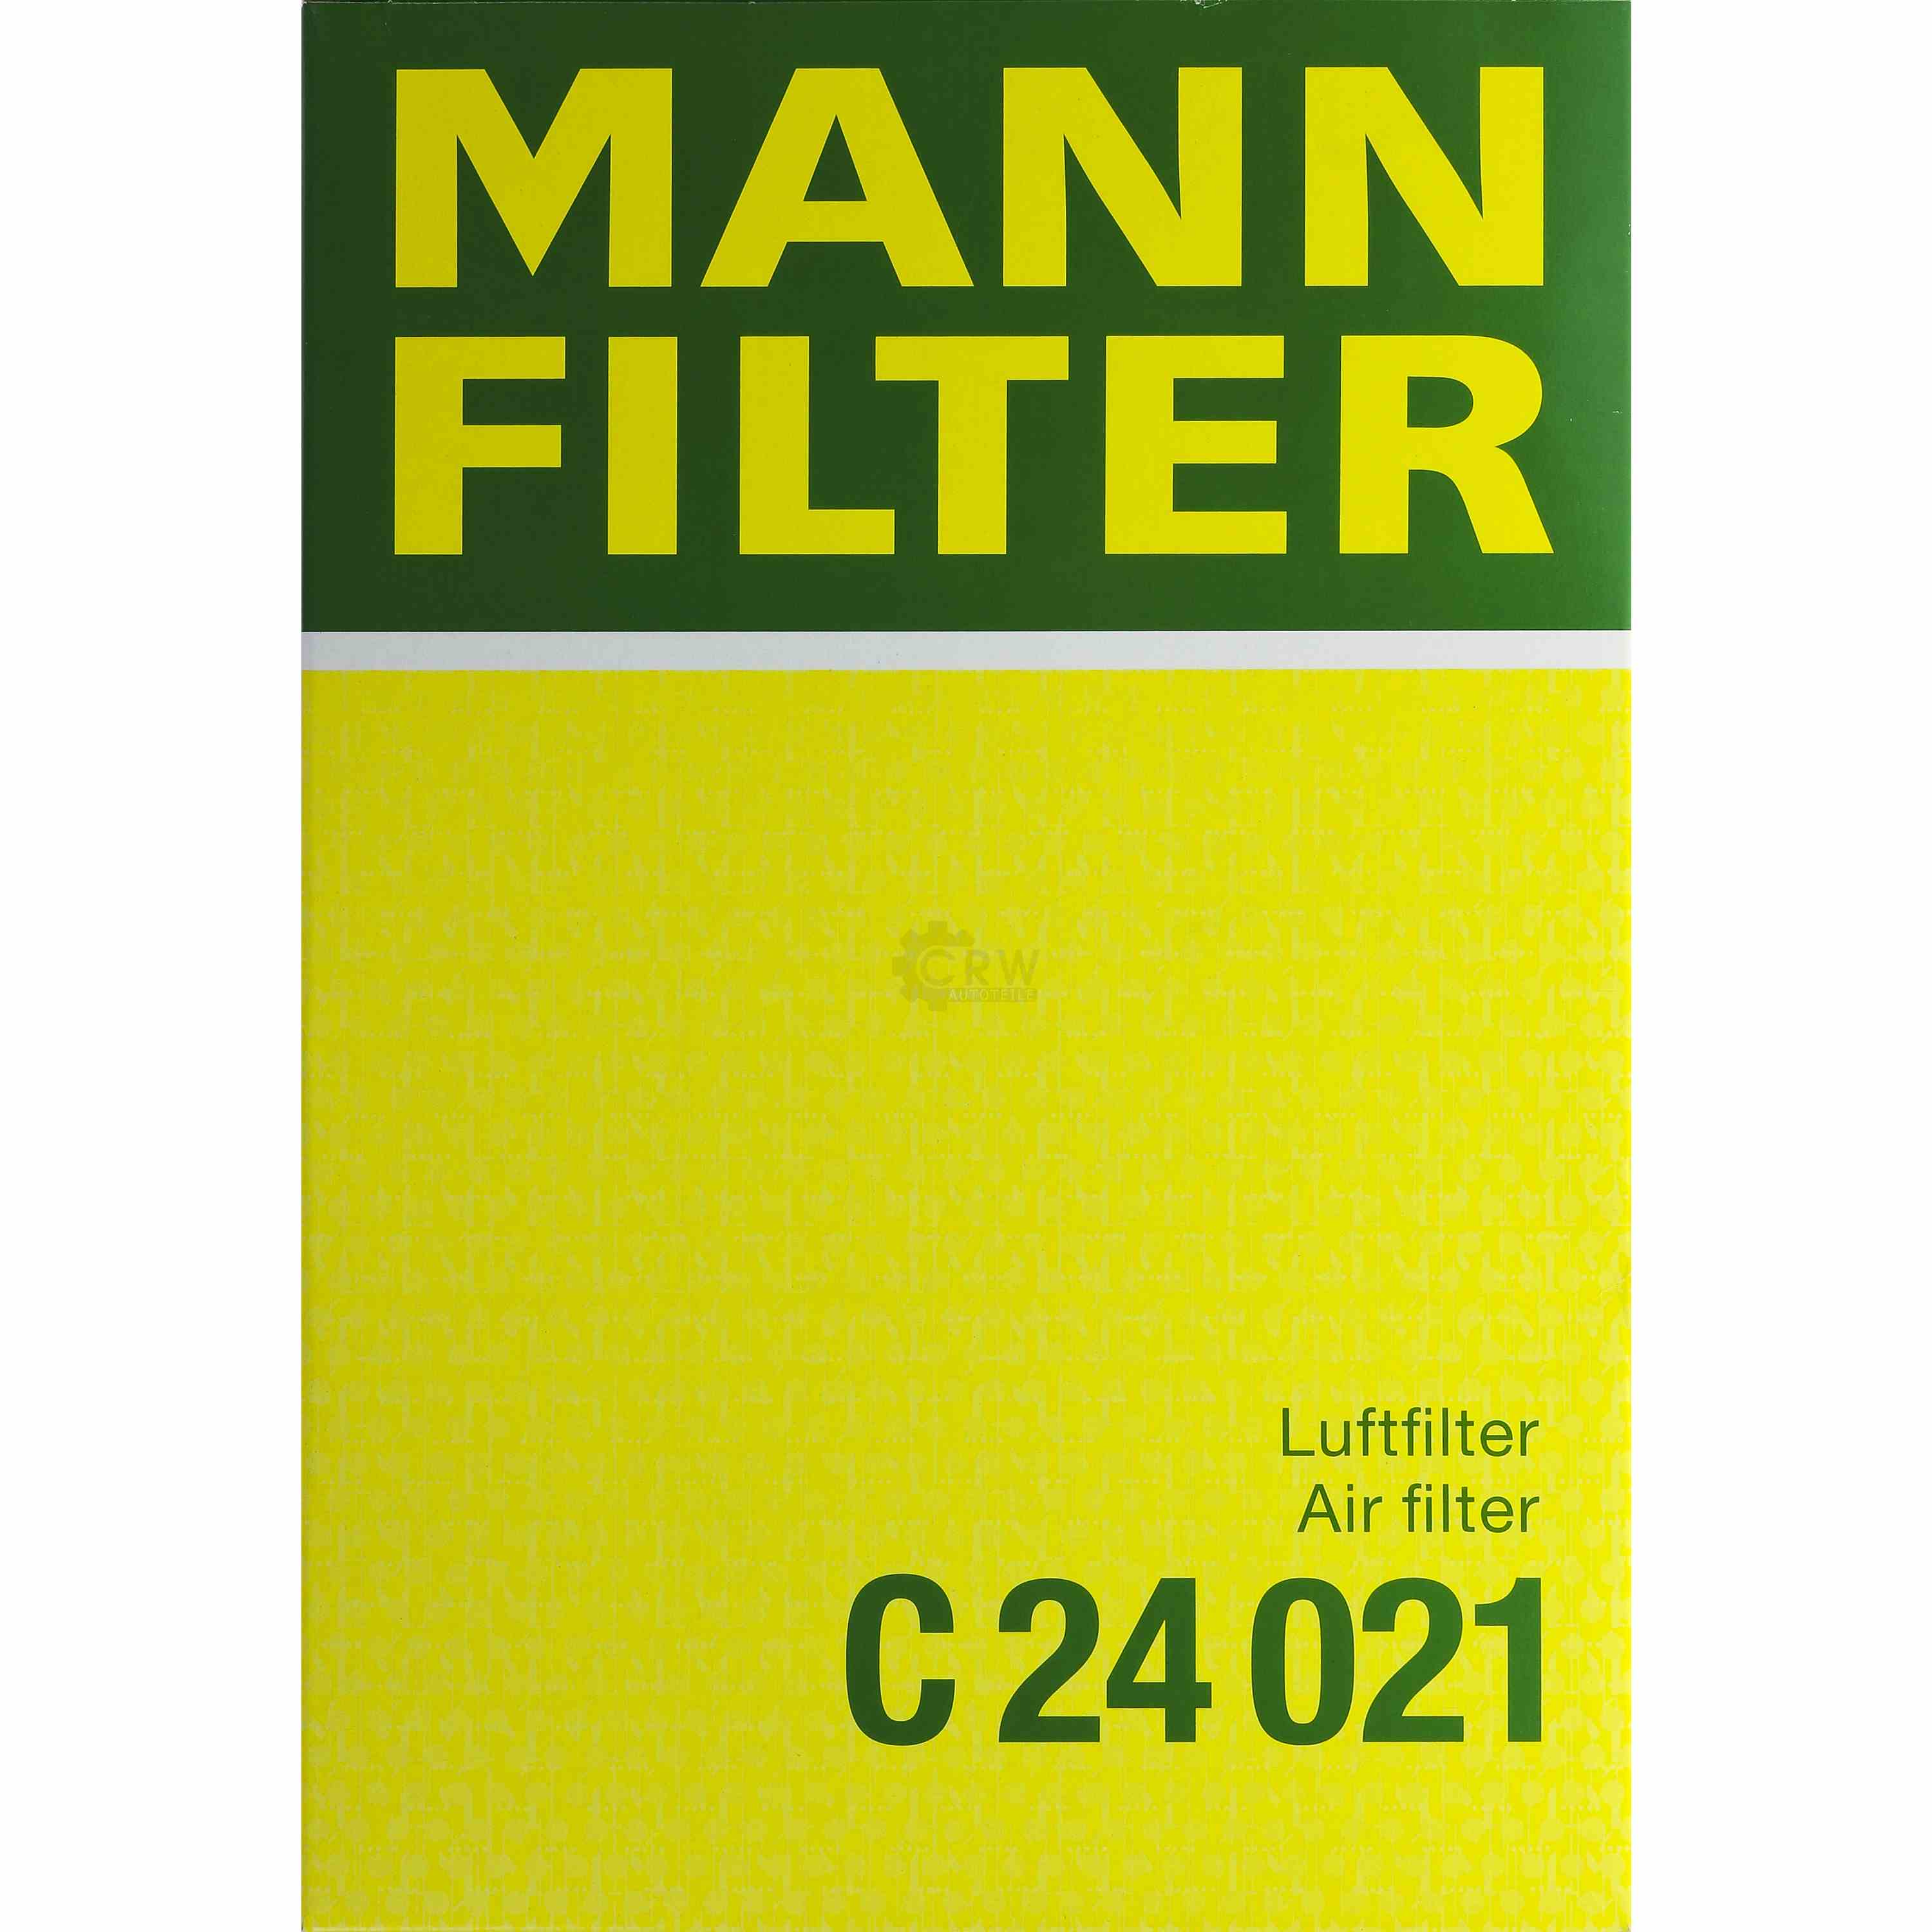 MANN-FILTER Luftfilter für Honda Civic IX FB FG 1.8i-VTEC FK 1.8 1.6